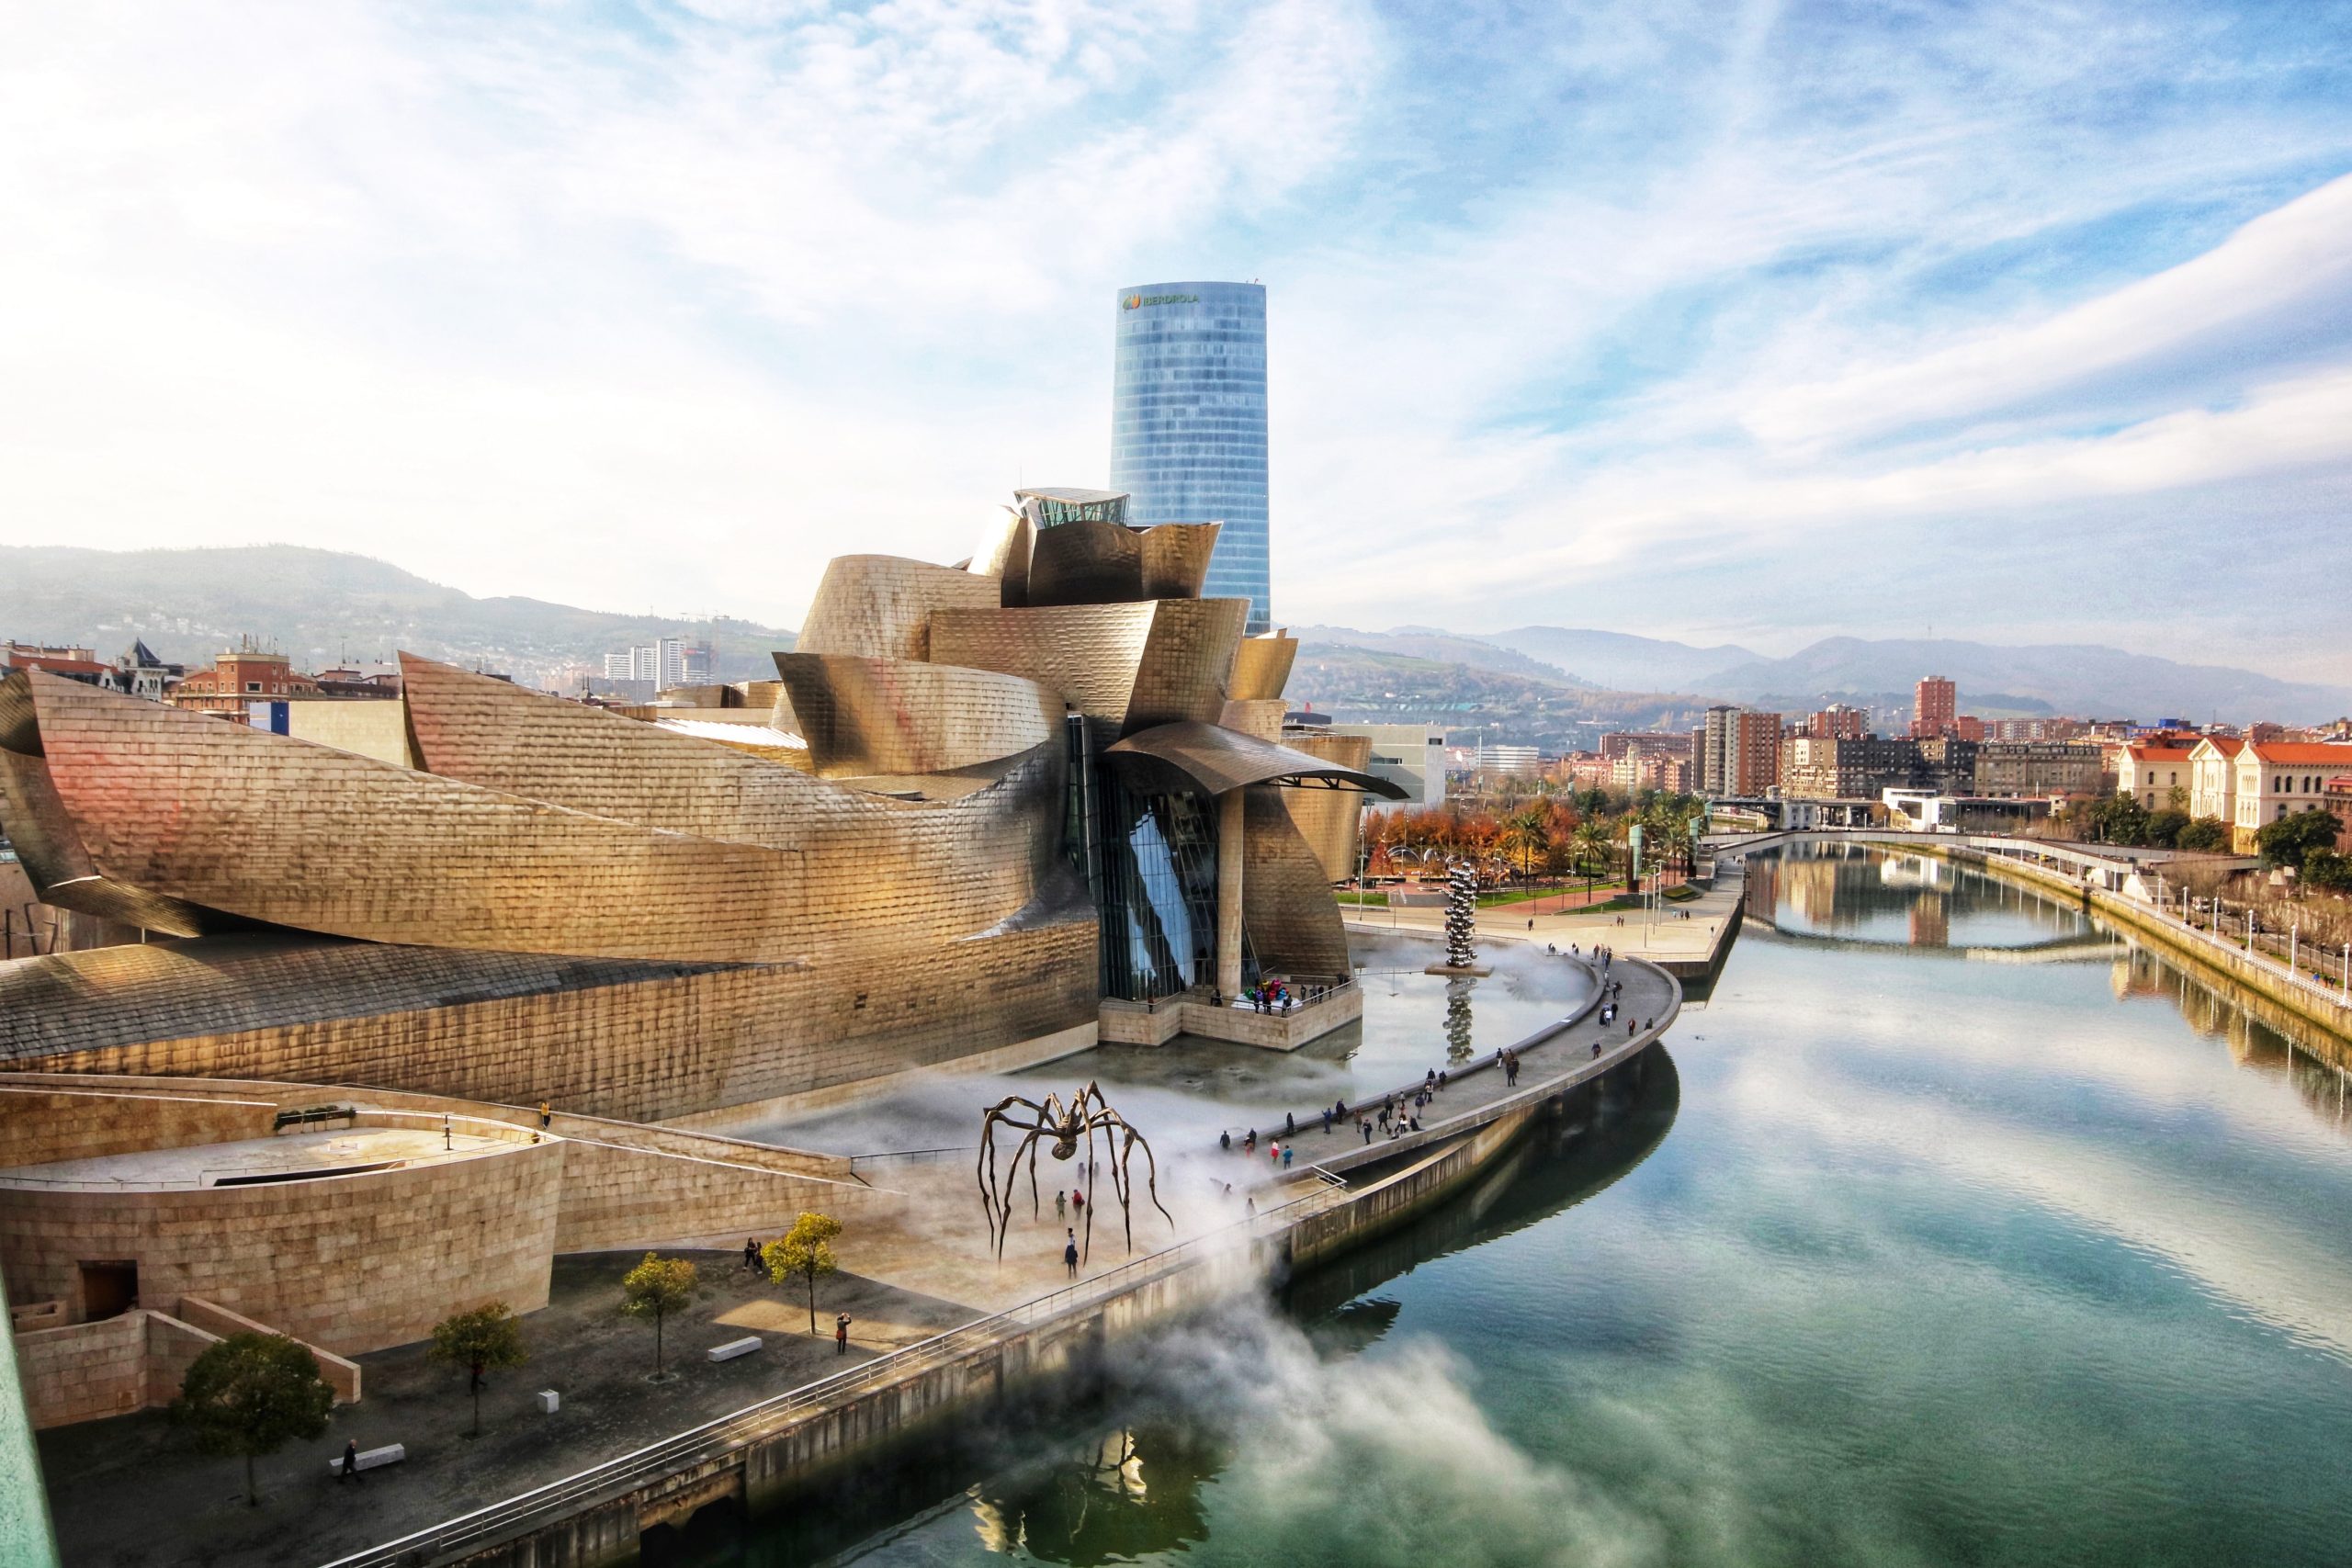 Bilbao city breaks in Spain